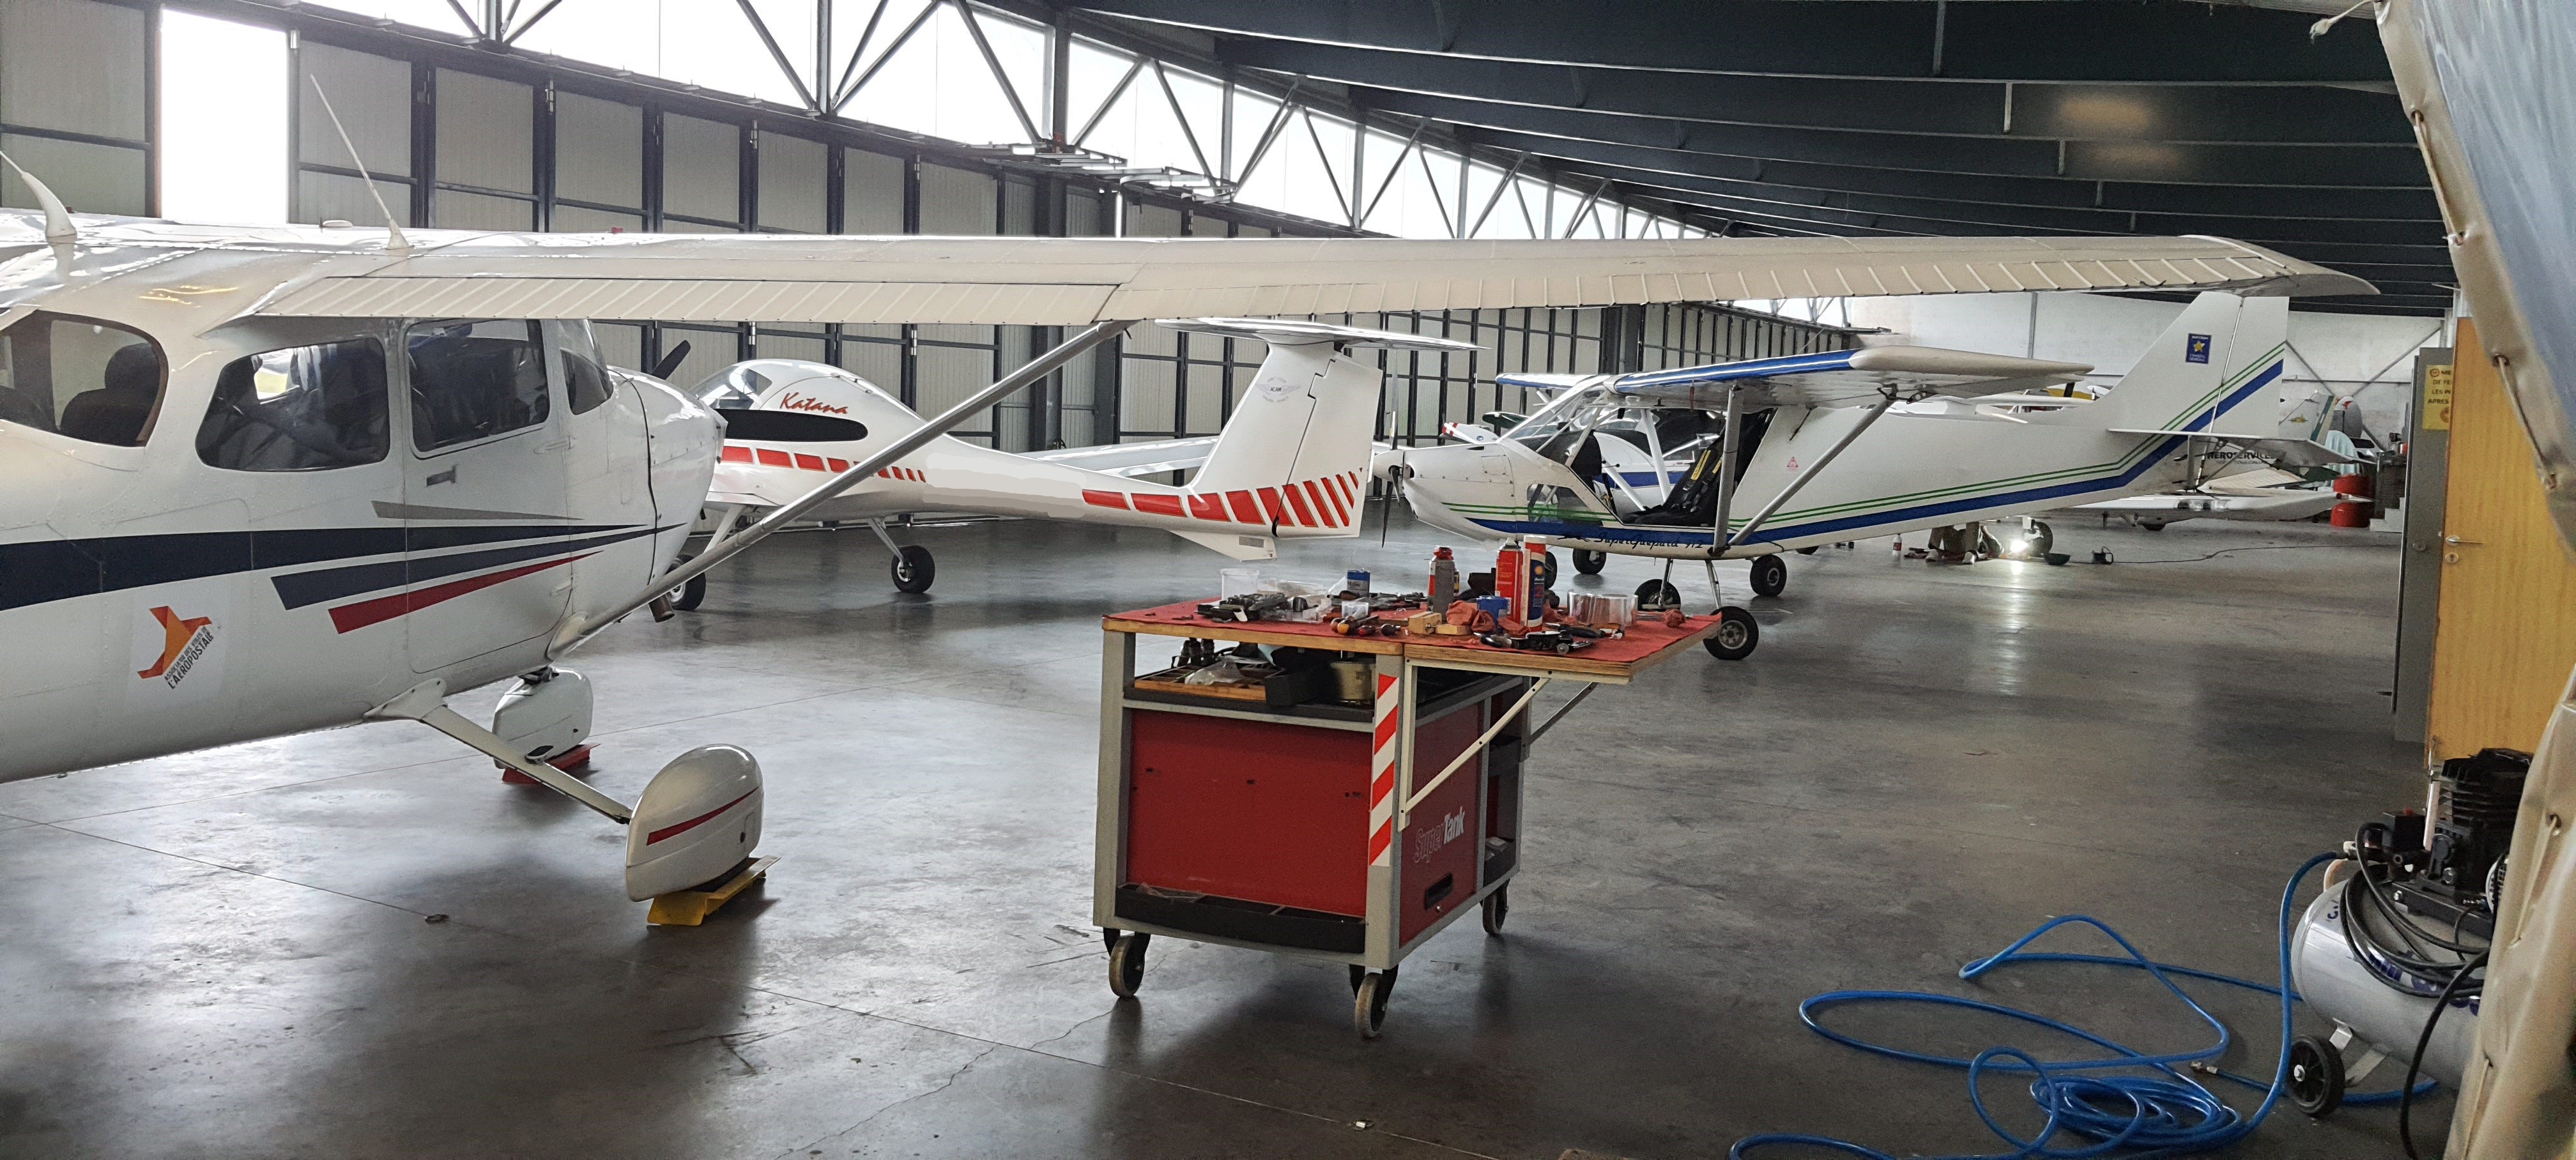 Avions en maintenance dans un atelier de mécanique aéronautique - Airservices France